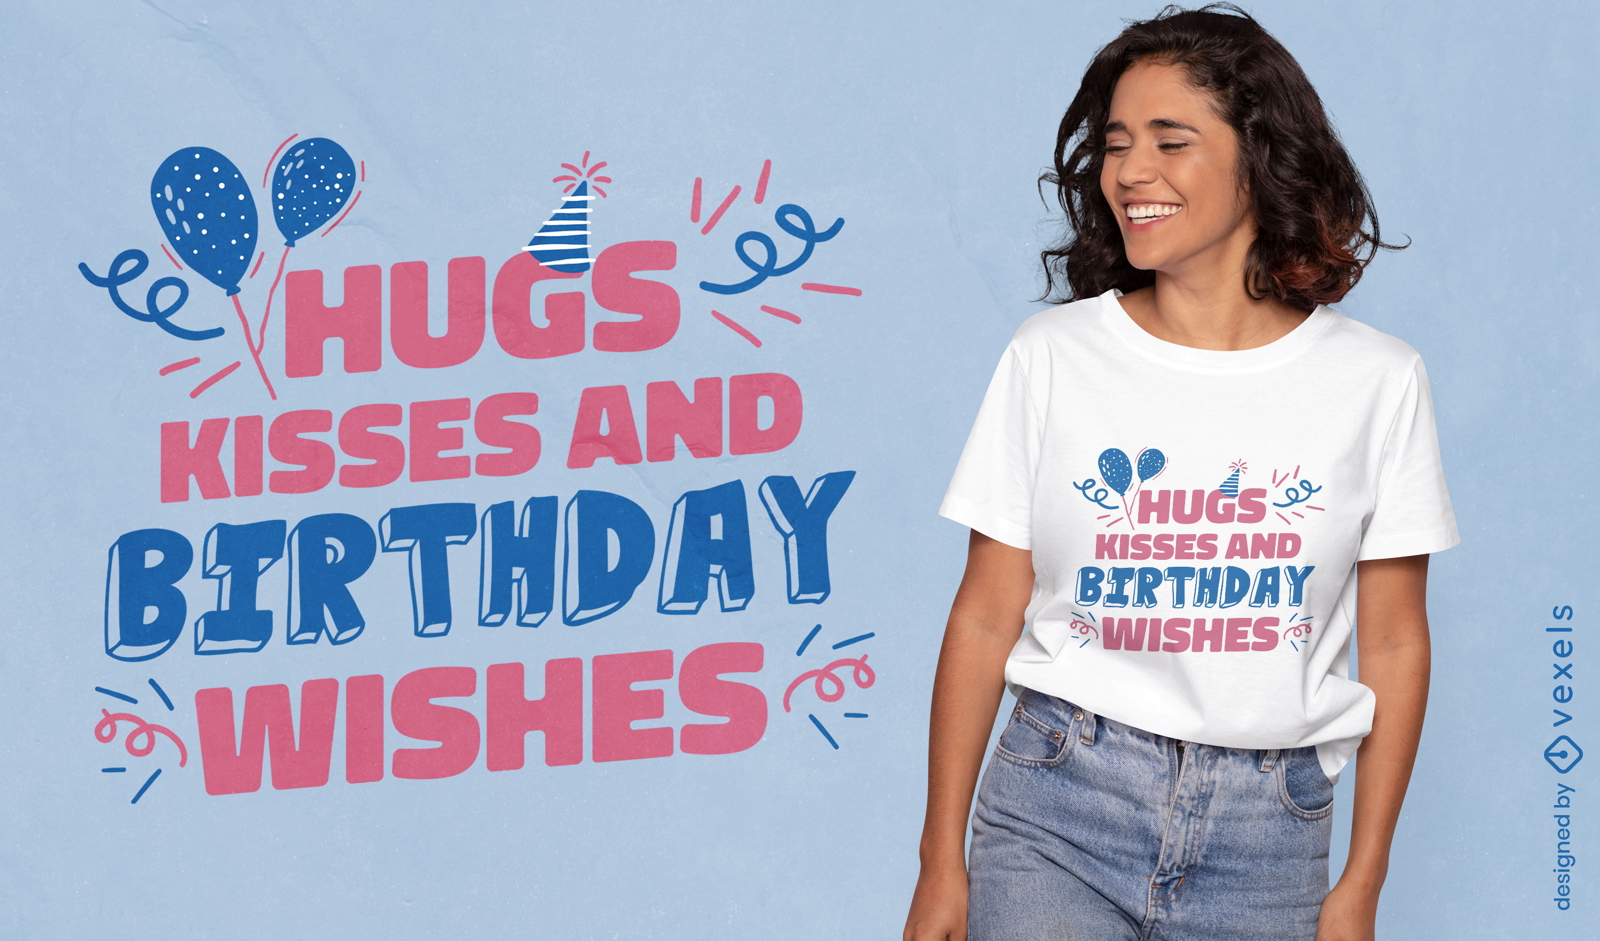 Desejos de aniversário citam design de camiseta